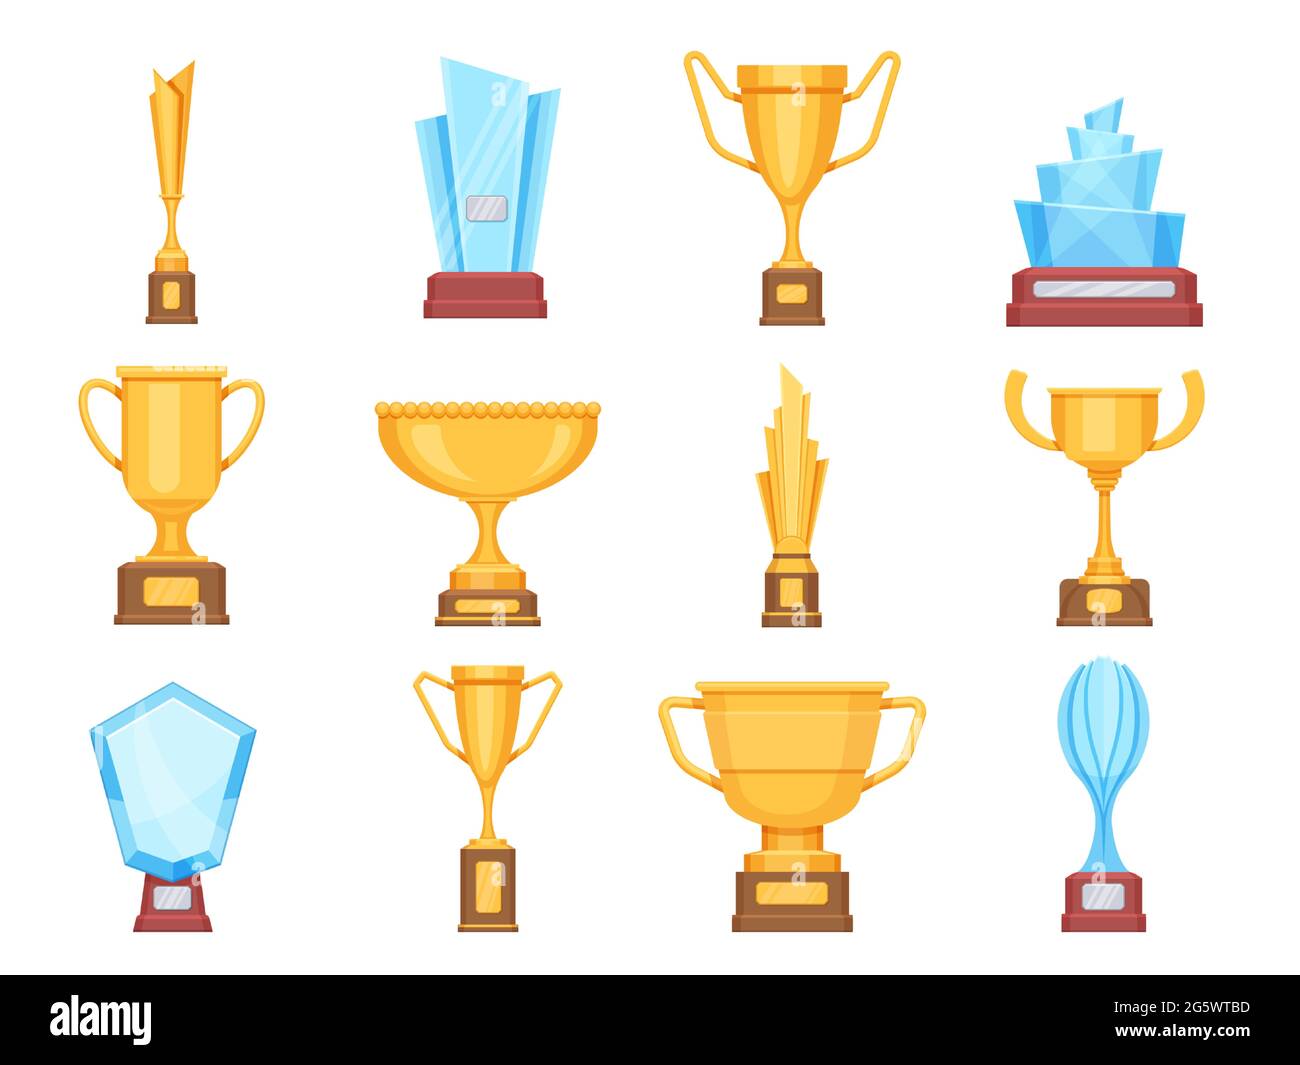 Goldene Pokale. Trophäen aus Glas und Gold für Sport oder Wettkampf. Crystal Championship Rewards und Gewinner Preise flache Vektor-Set Stock Vektor